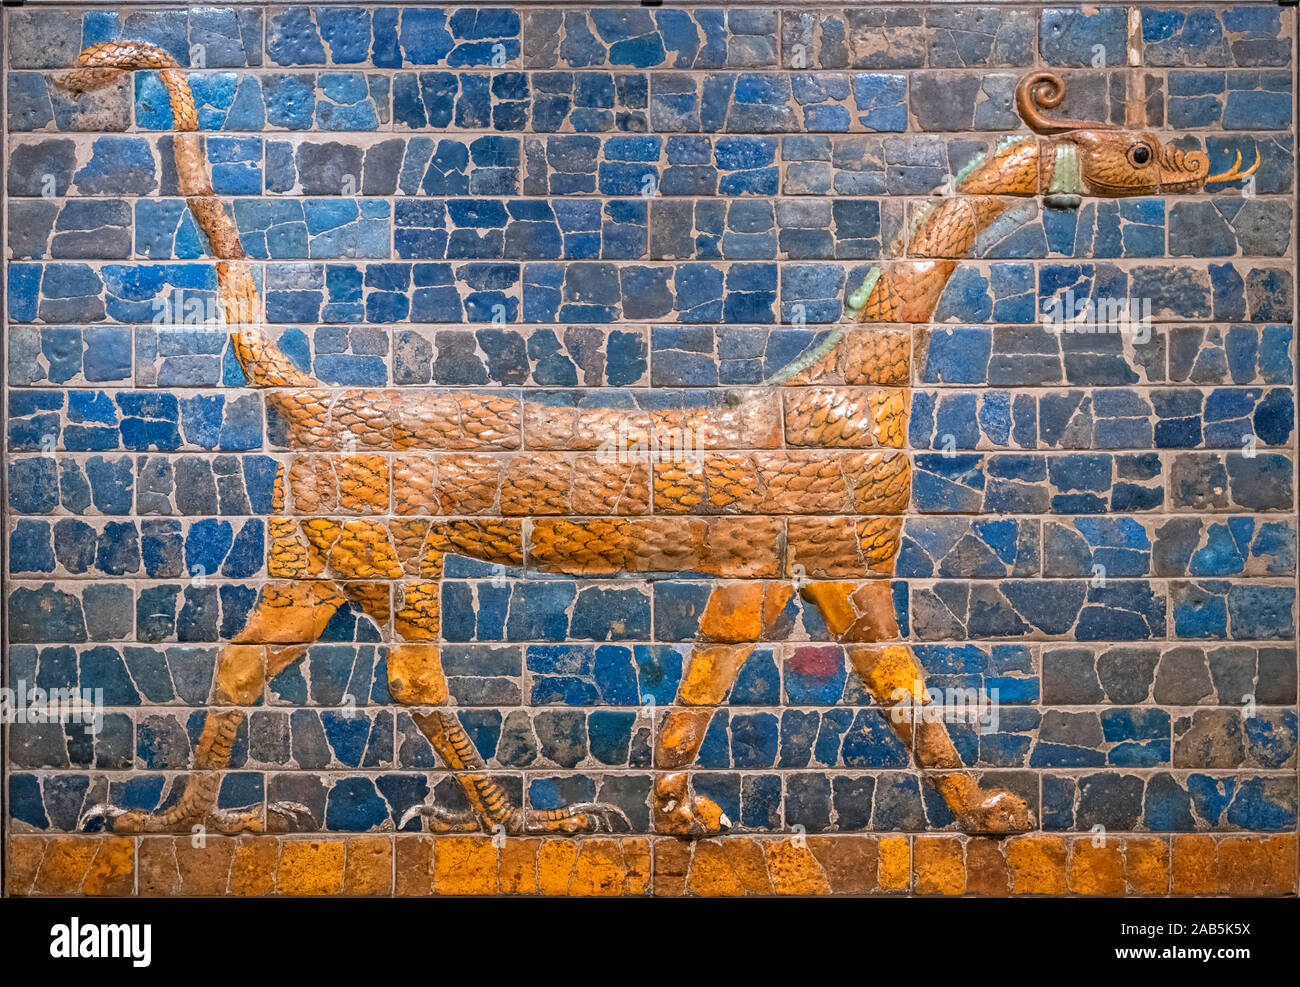 Mushhushshu babilonese-drago, simbolo del dio Marduk, 604 - 562 BC, terracotta invetriata e stampati mattone. Il drago di estensione è stato una parte della decorazione del Ishtar Gate nella antica città di Babilonia. Foto Stock